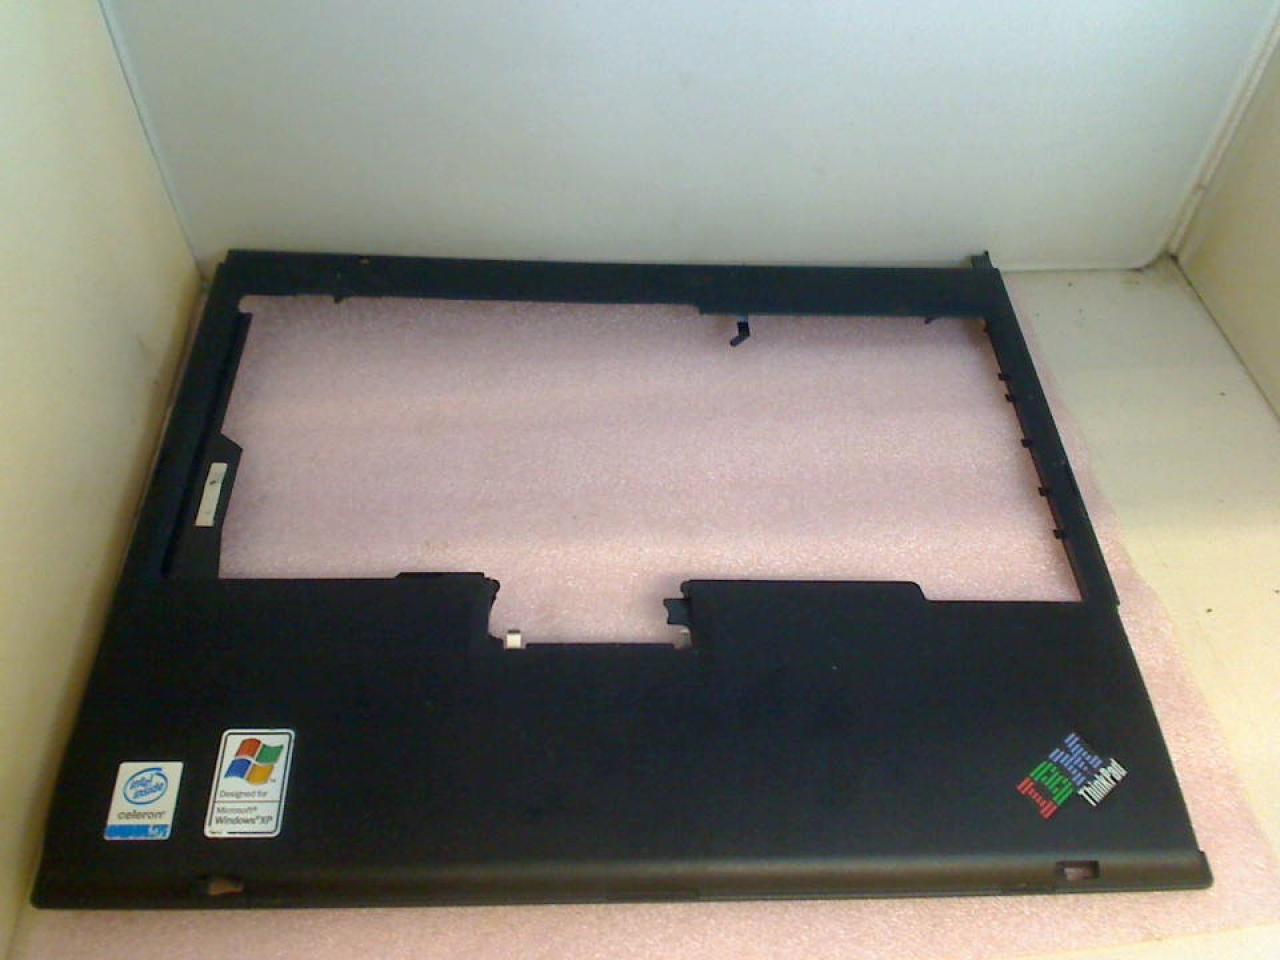 Gehäuse Oberschale Handauflage ohne Touchpad IBM ThinkPad R50e 1834-J8G